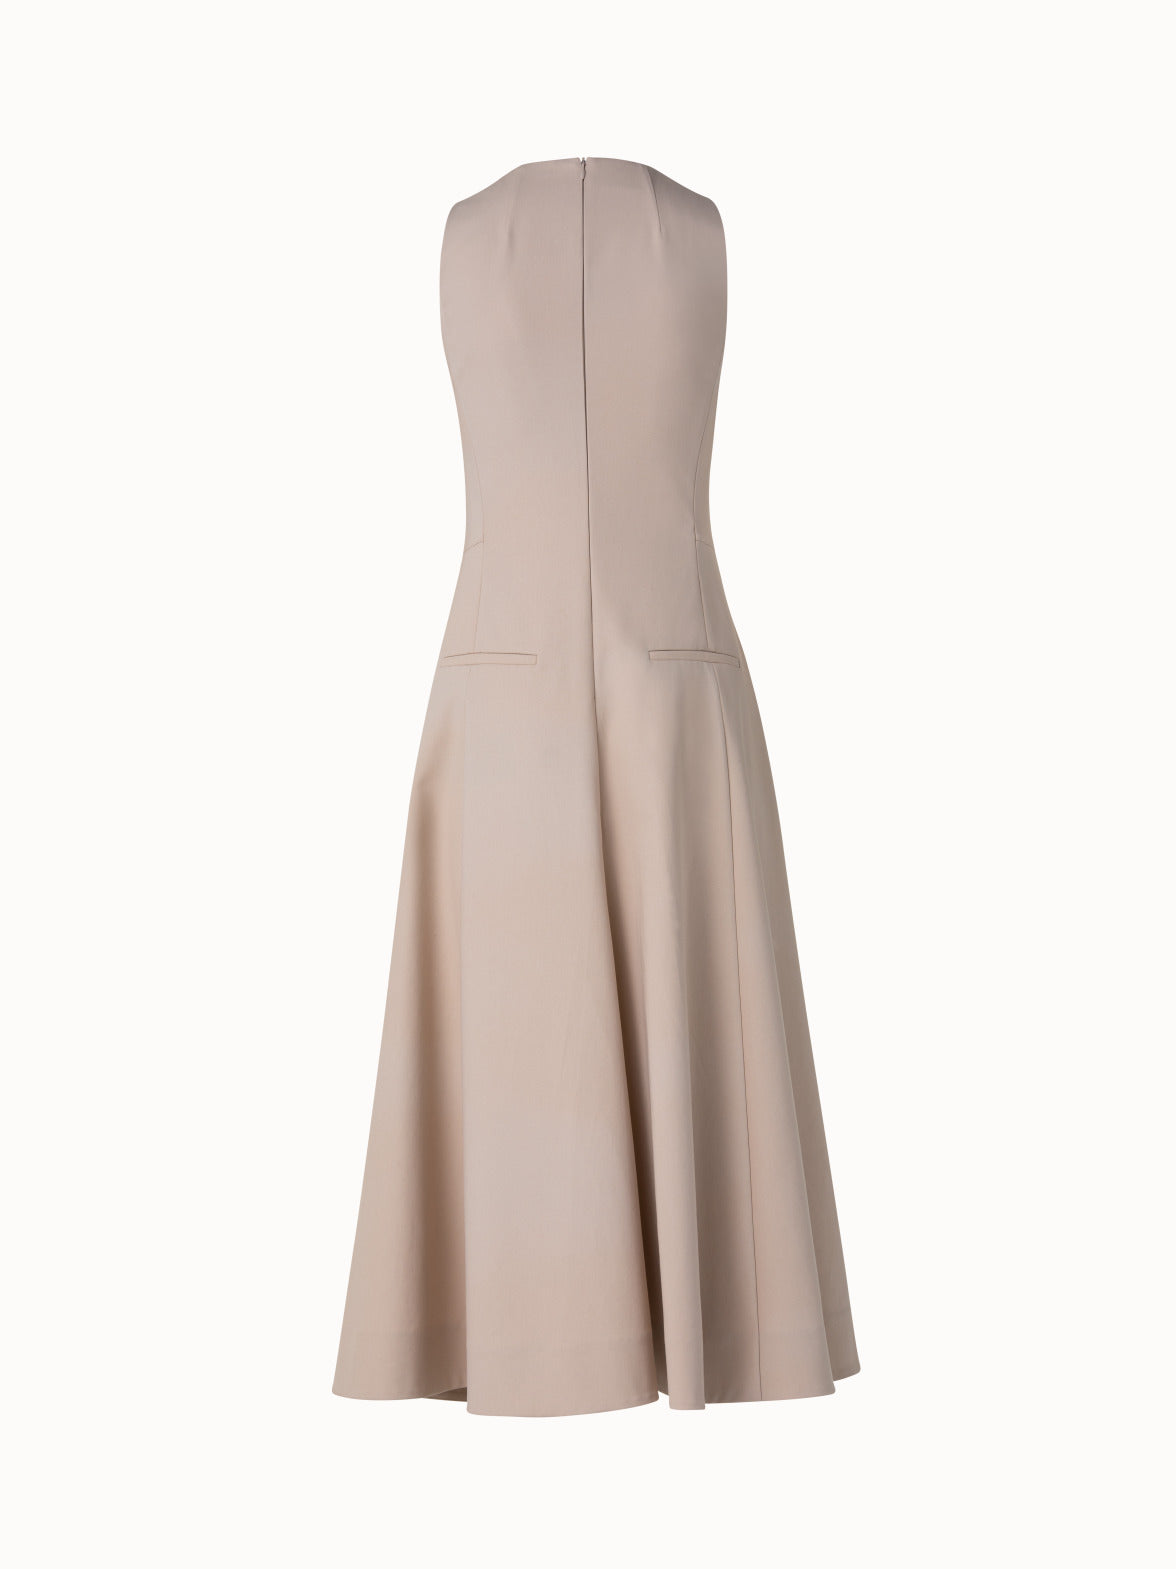 Dress - Brown twill dress